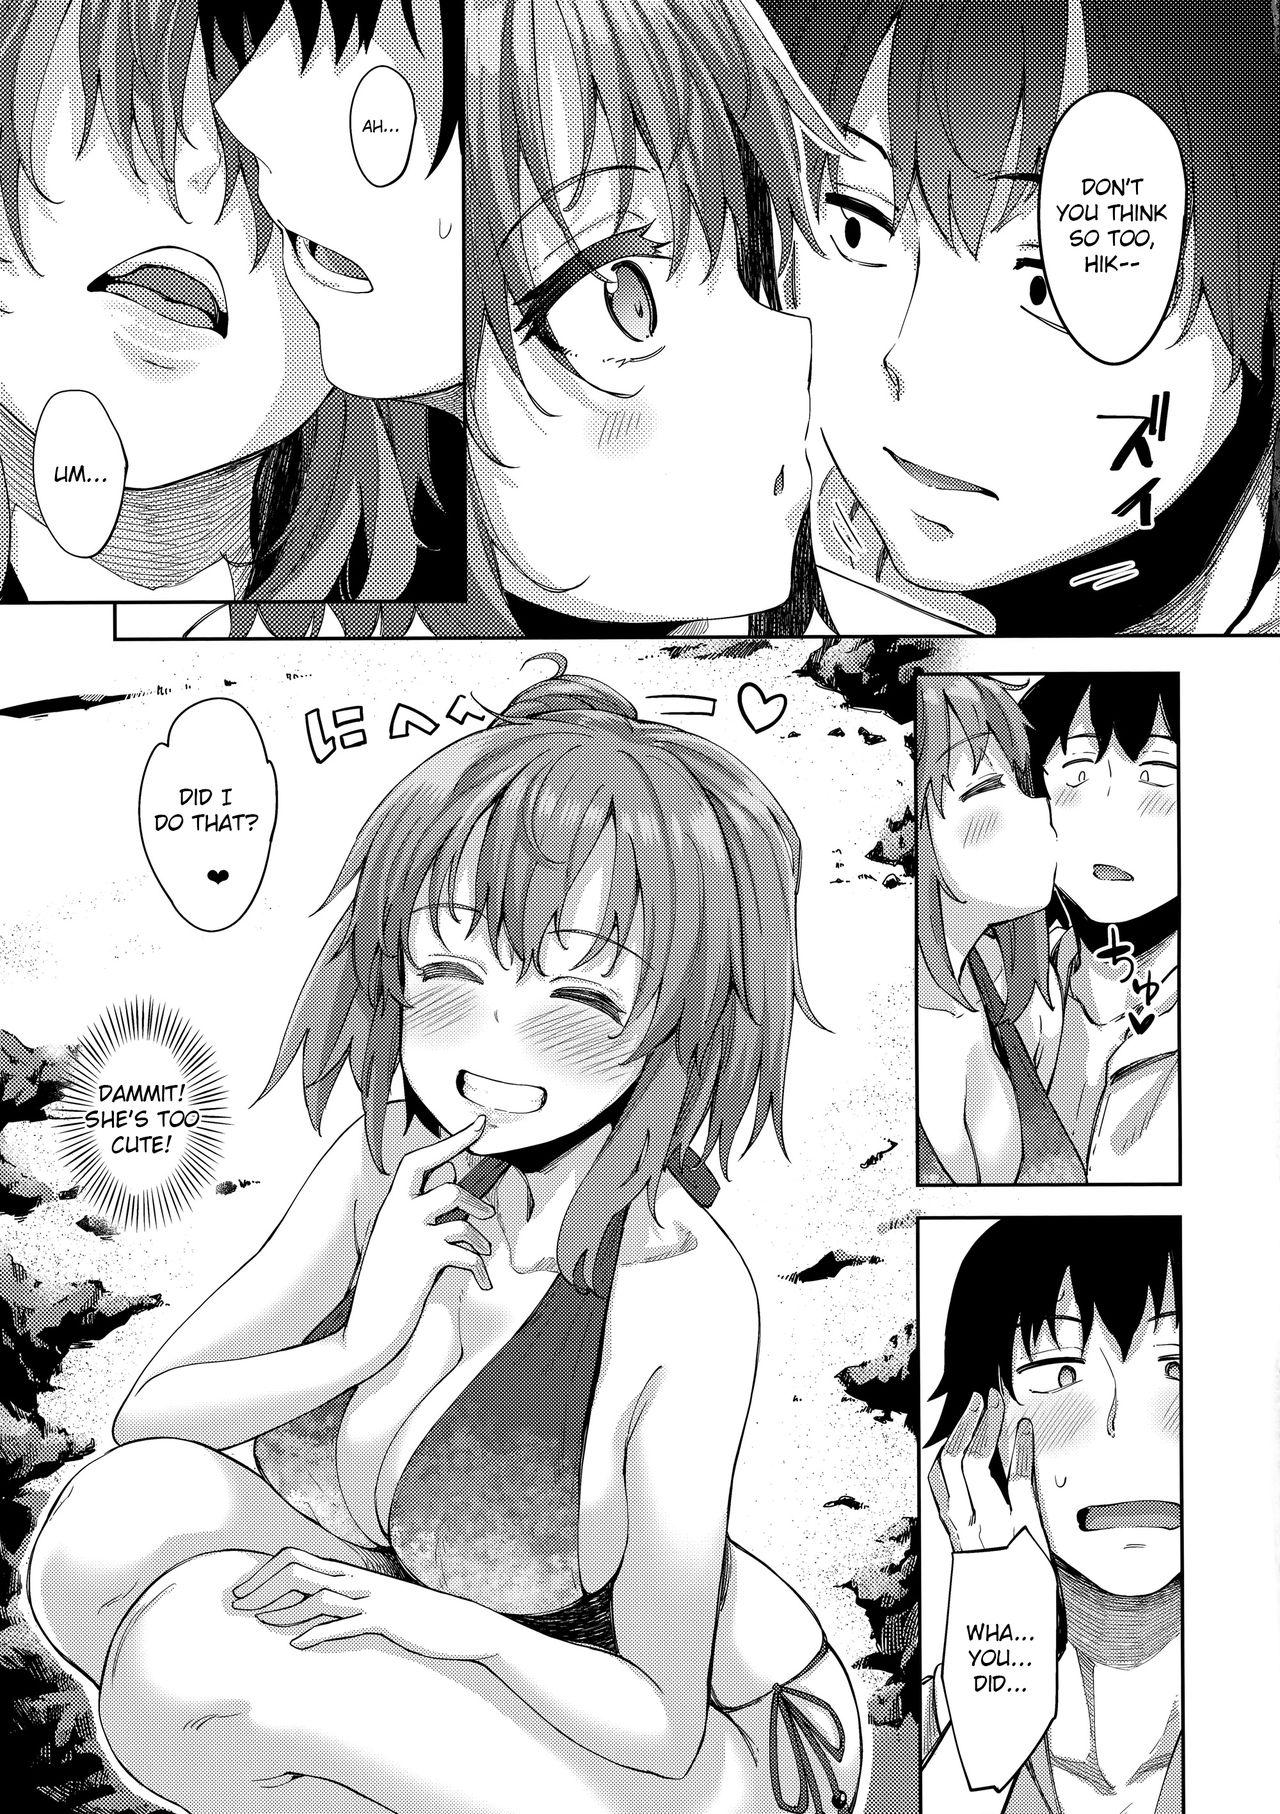 Asslicking LOVE STORY #05 - Yahari ore no seishun love come wa machigatteiru Pussy Licking - Page 6